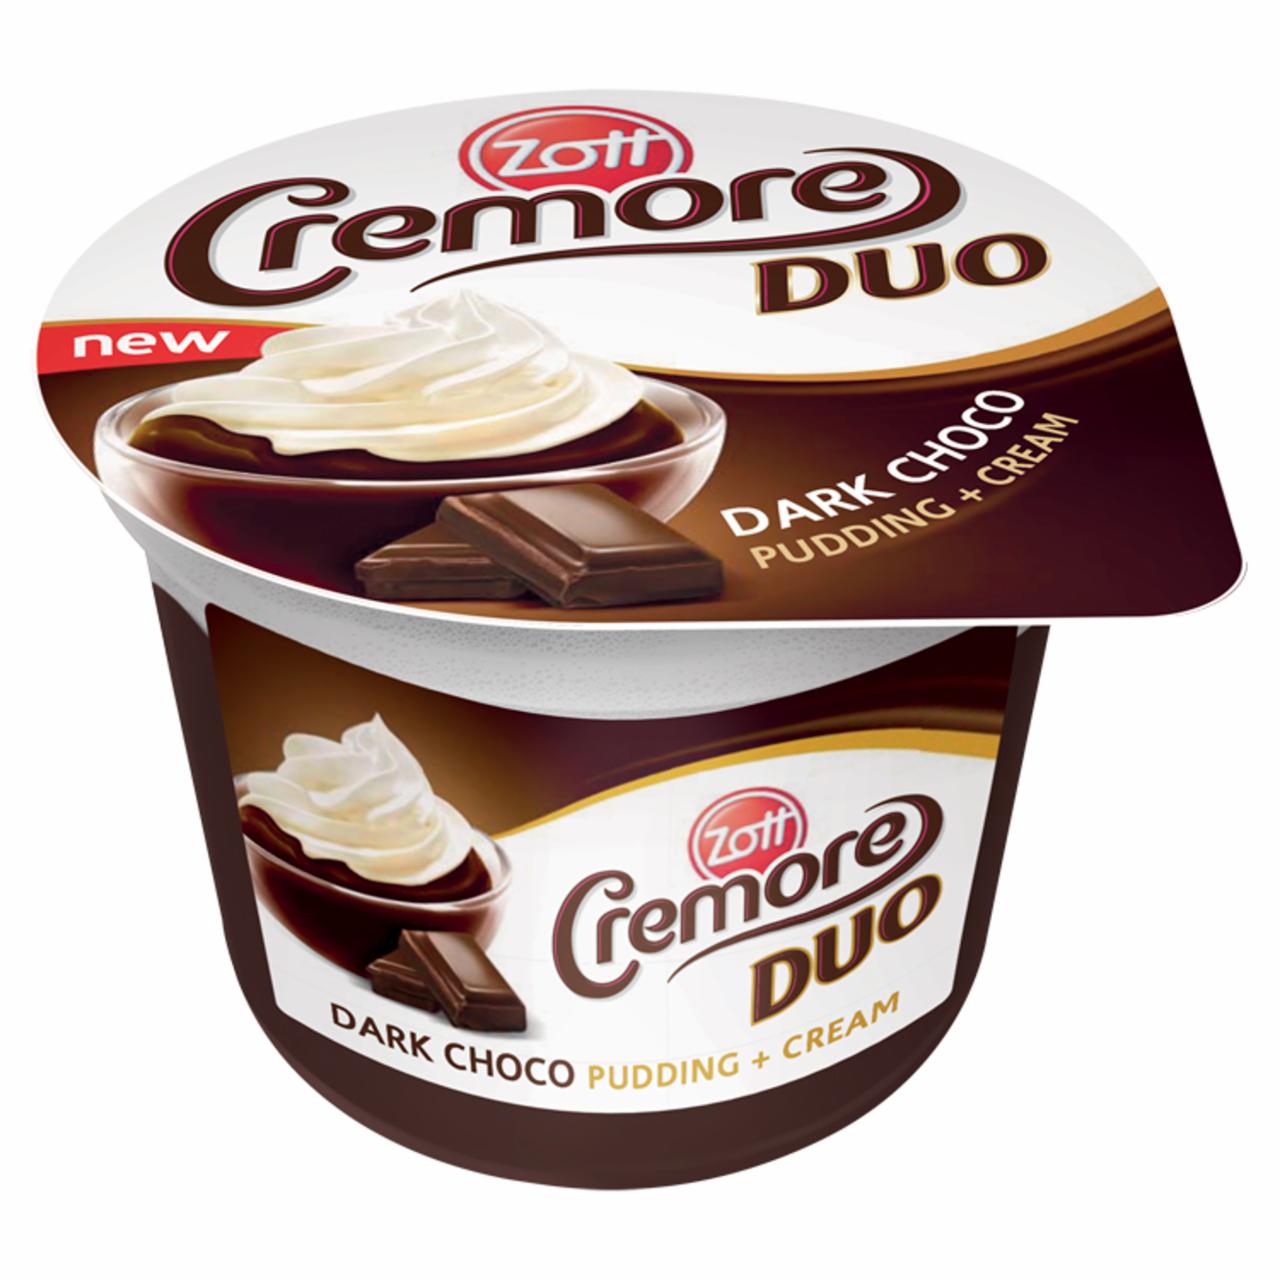 Képek - Zott Cremore Duo csokoládés desszert tejszínhabbal 190 g